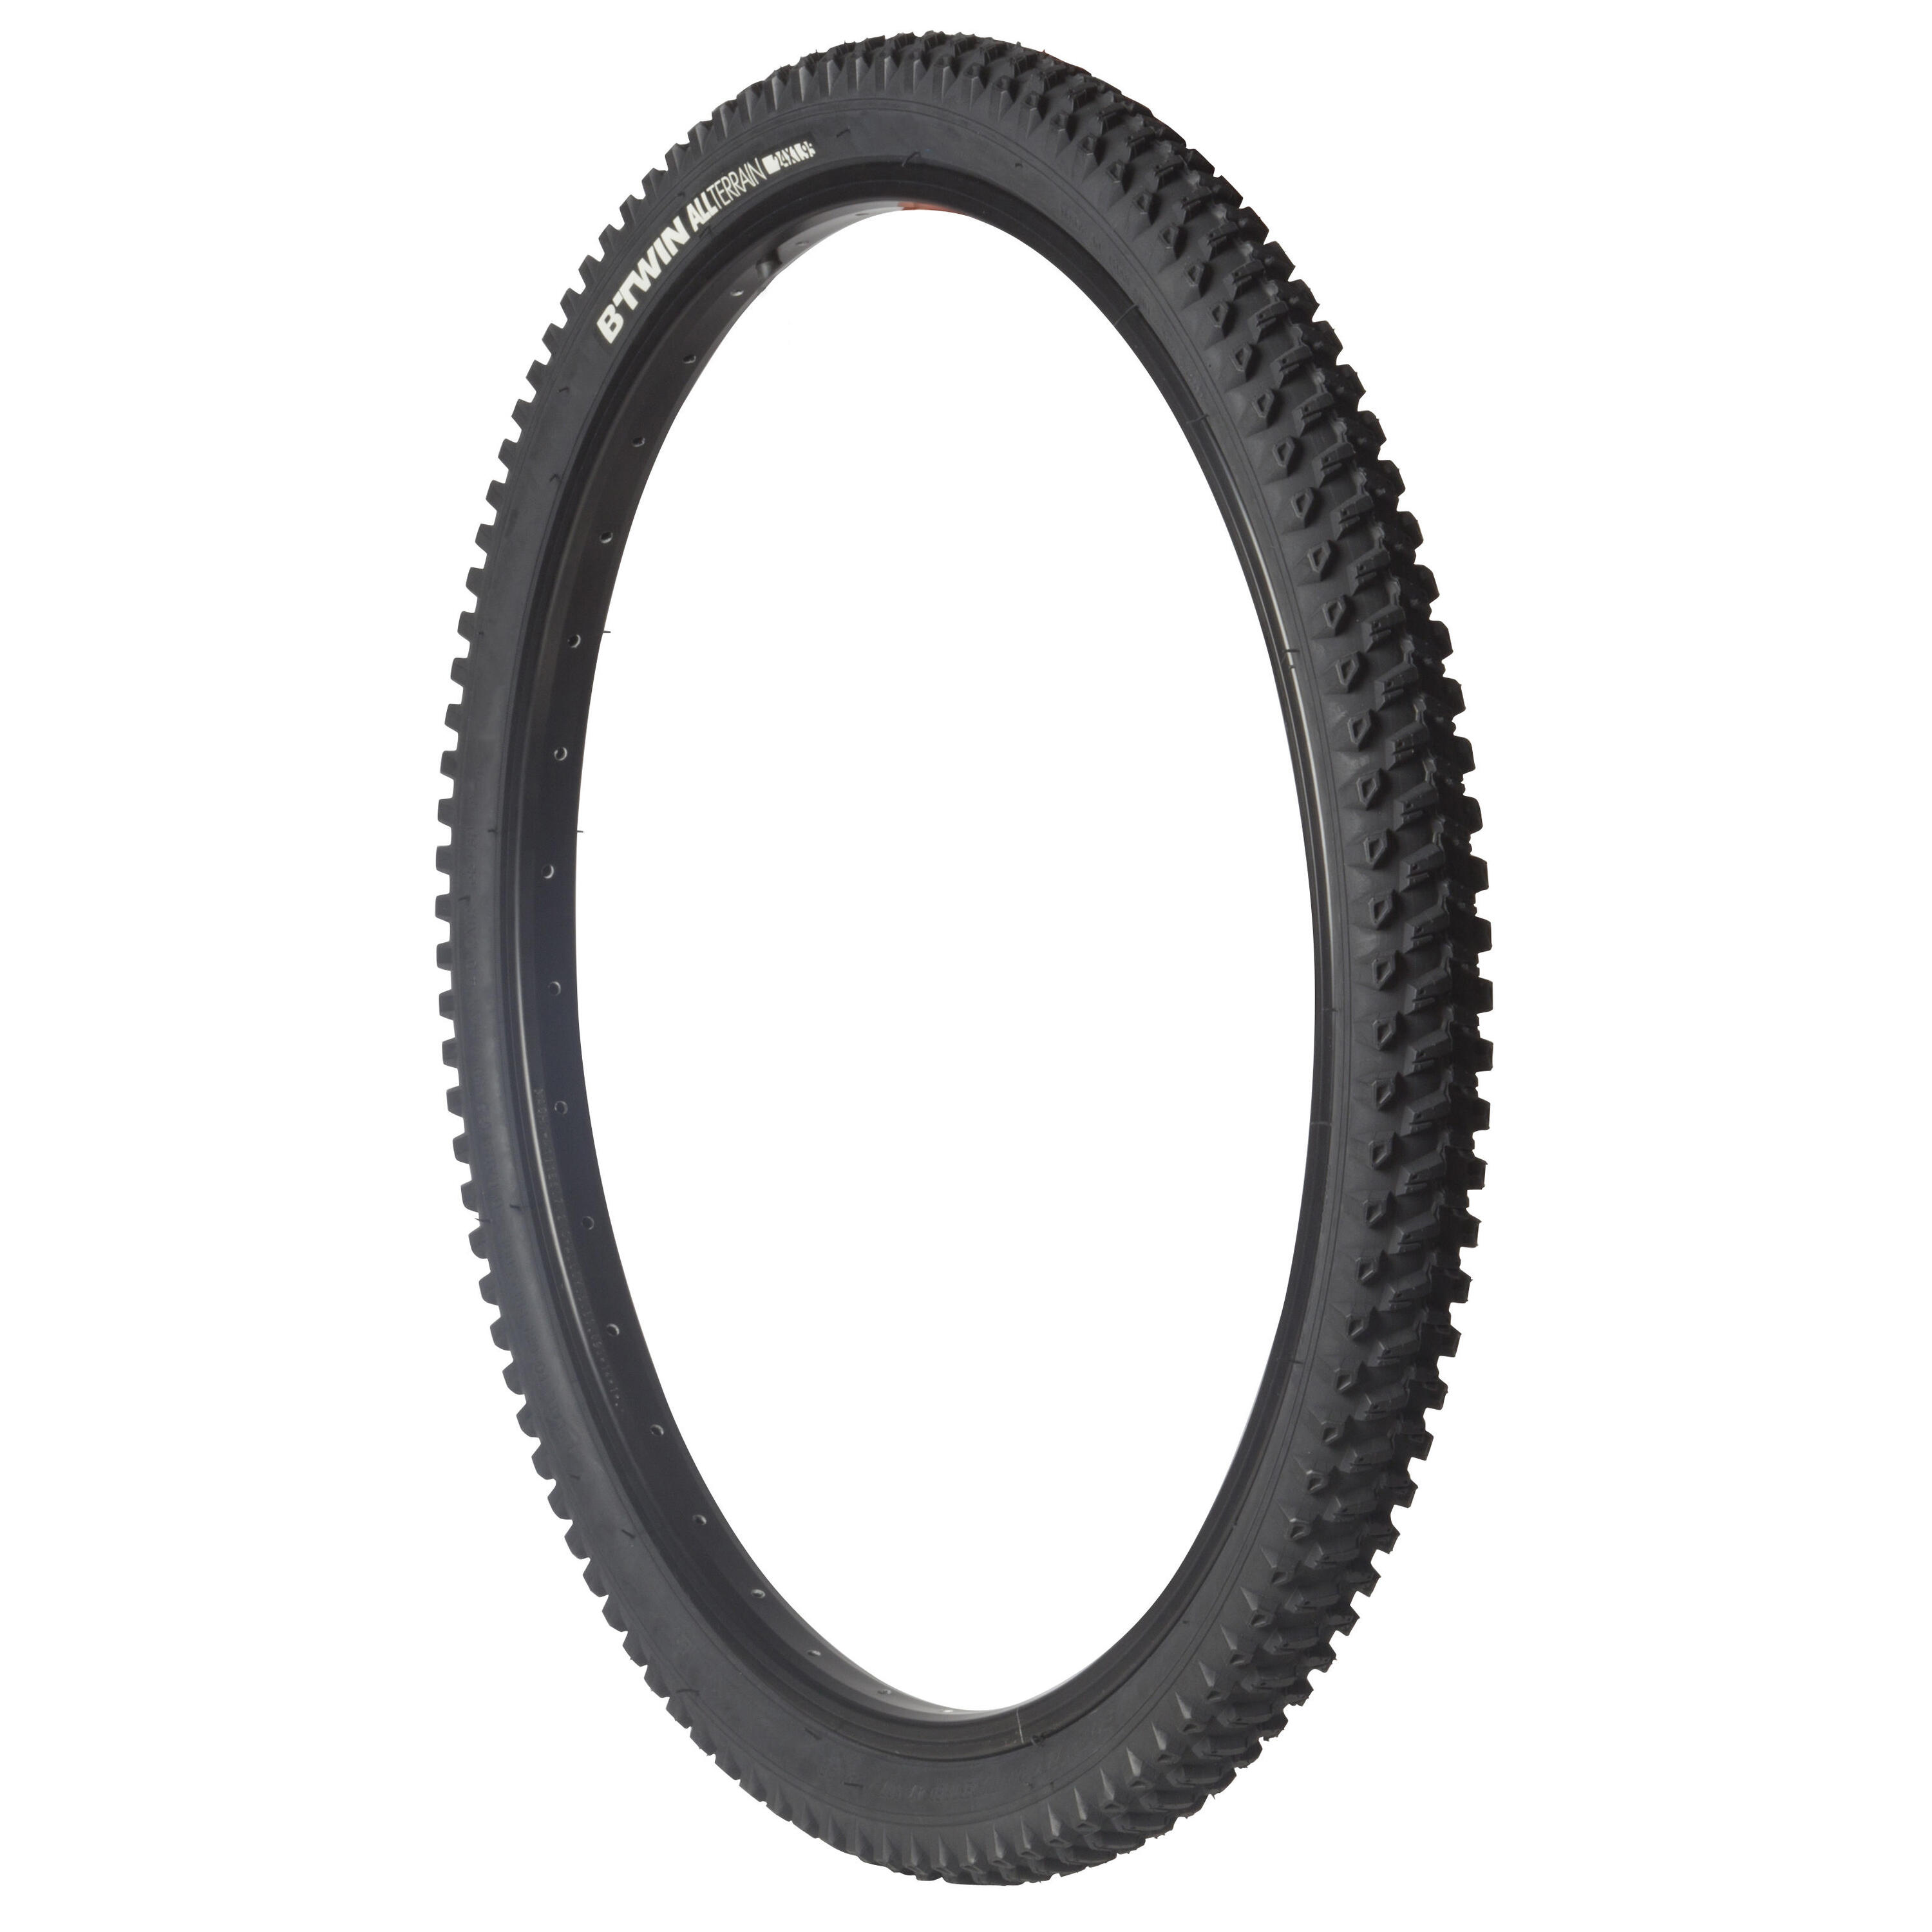 Kids’ All Terrain Mountain Bike Tyre 24x1.95 3/3